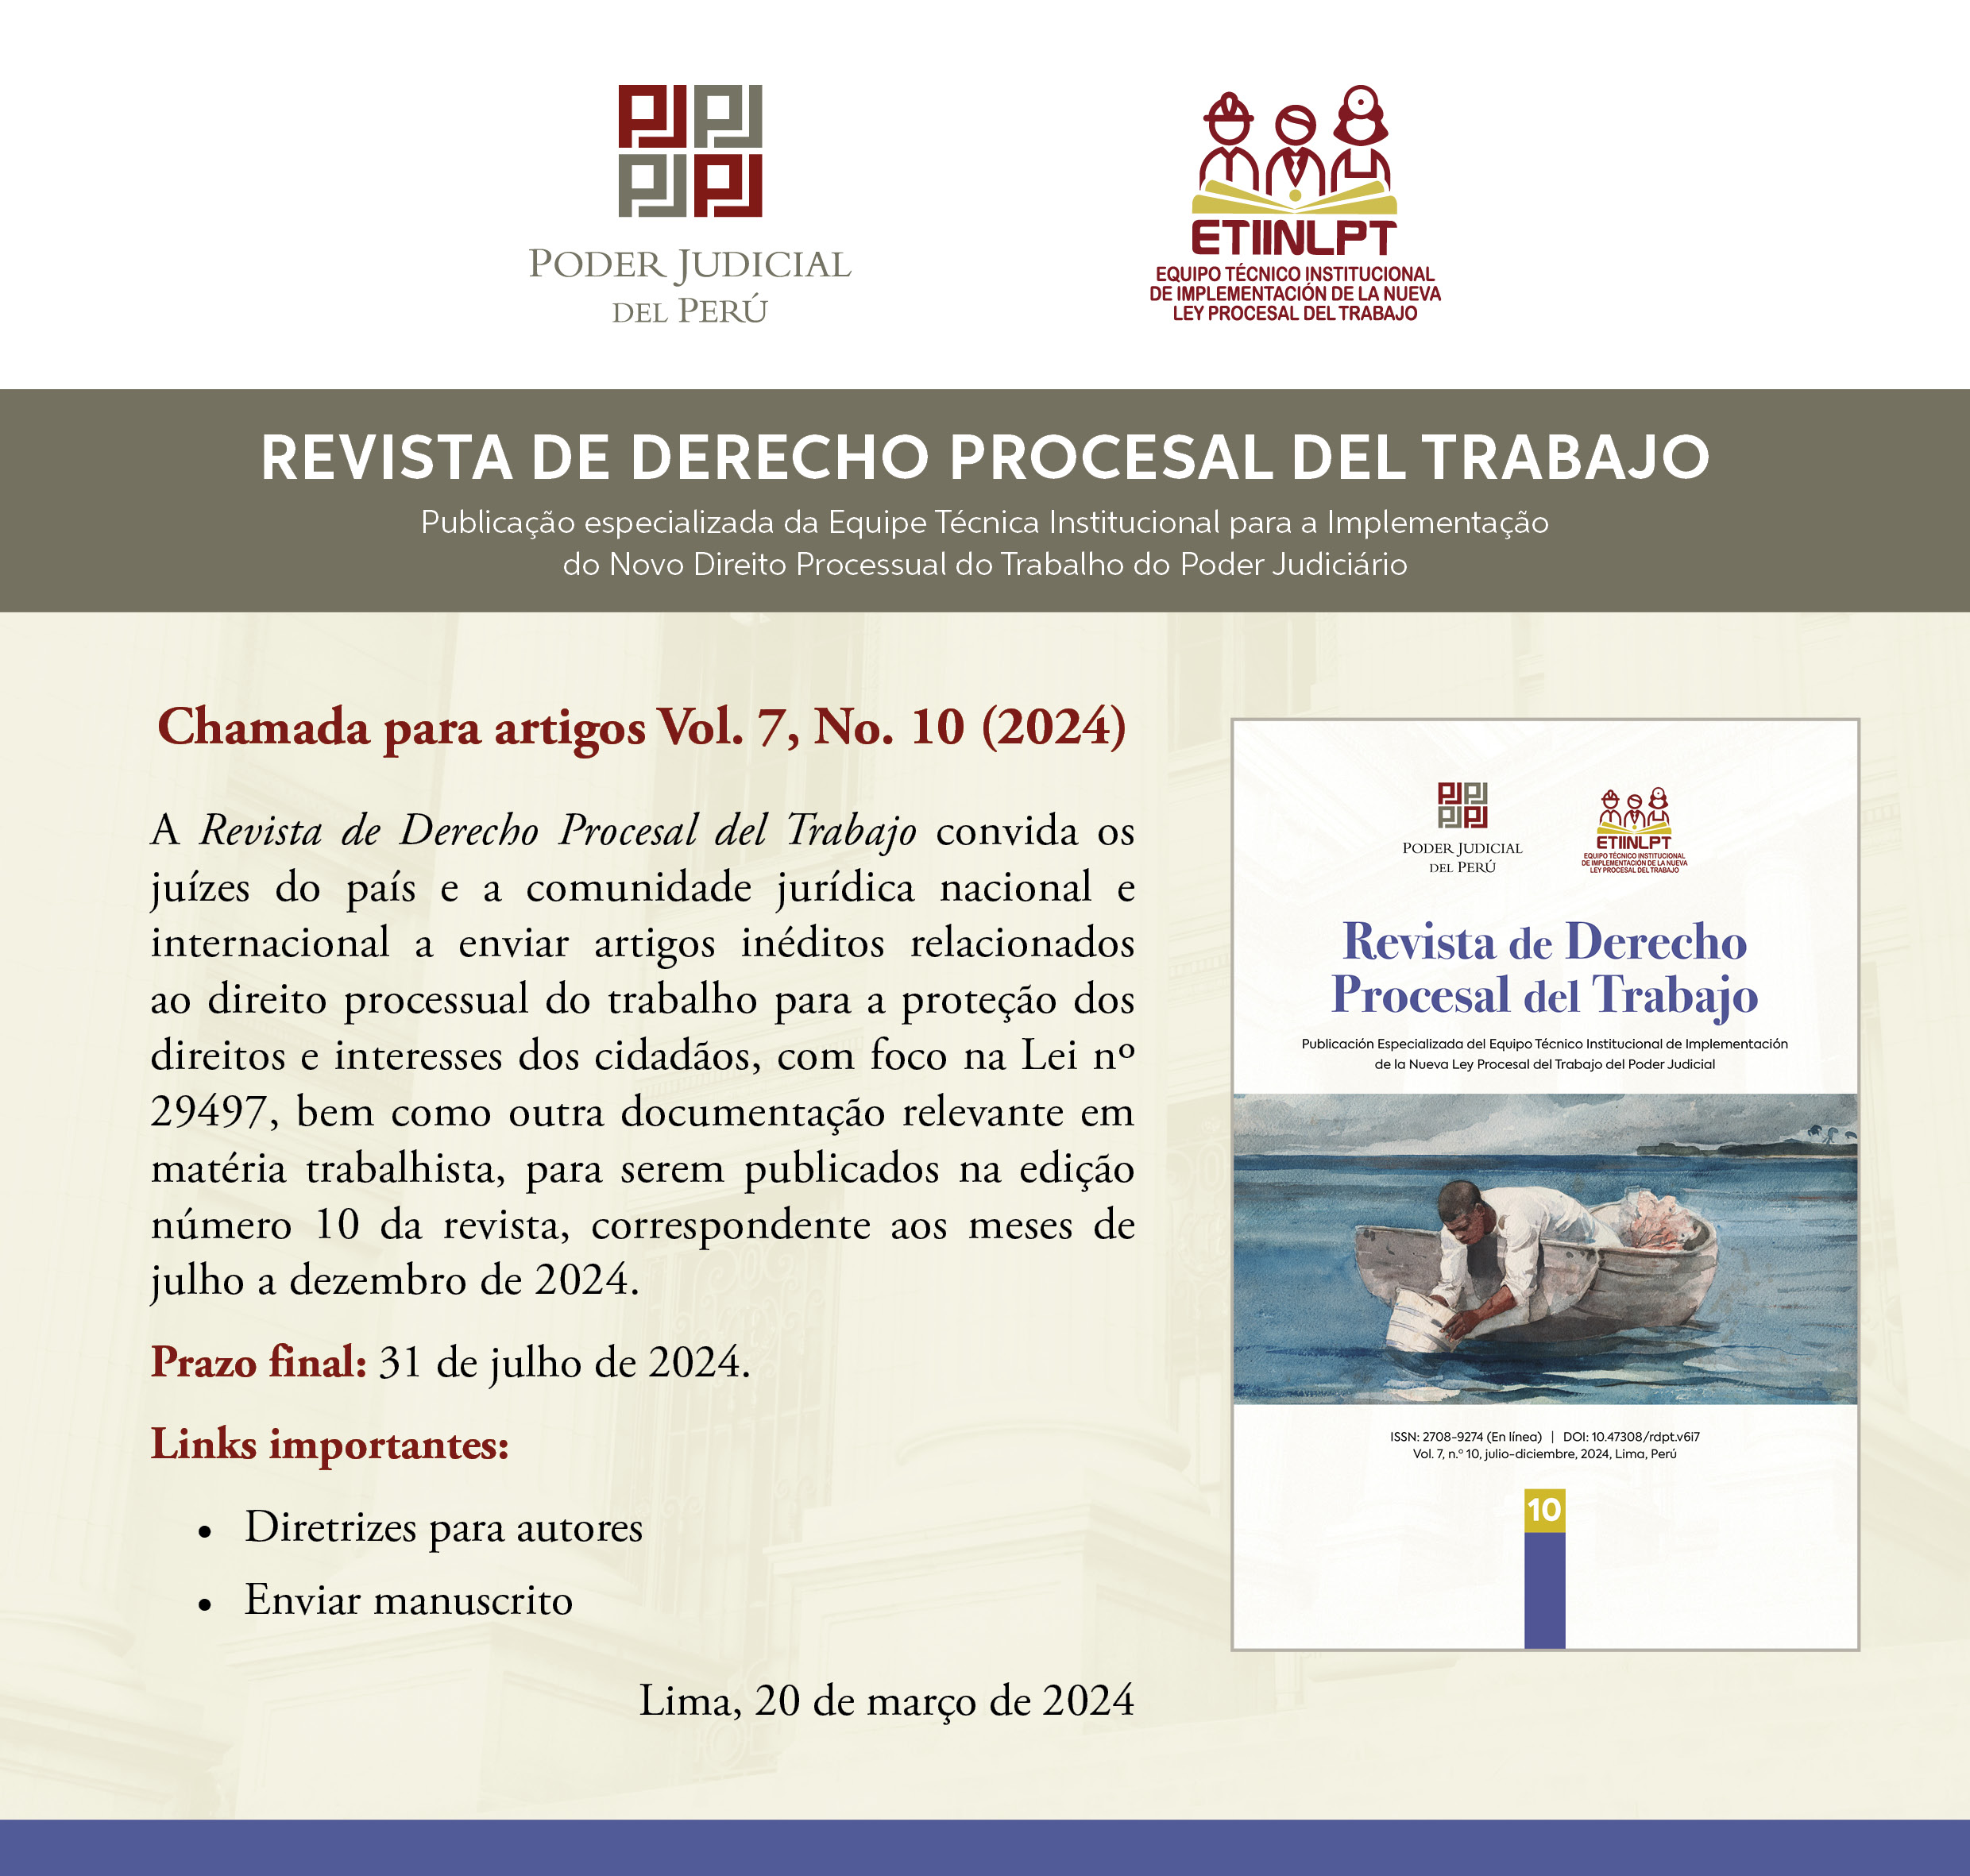 versión_portugues_Revista_de_derecho_procesal_del_trabajo10.jpg